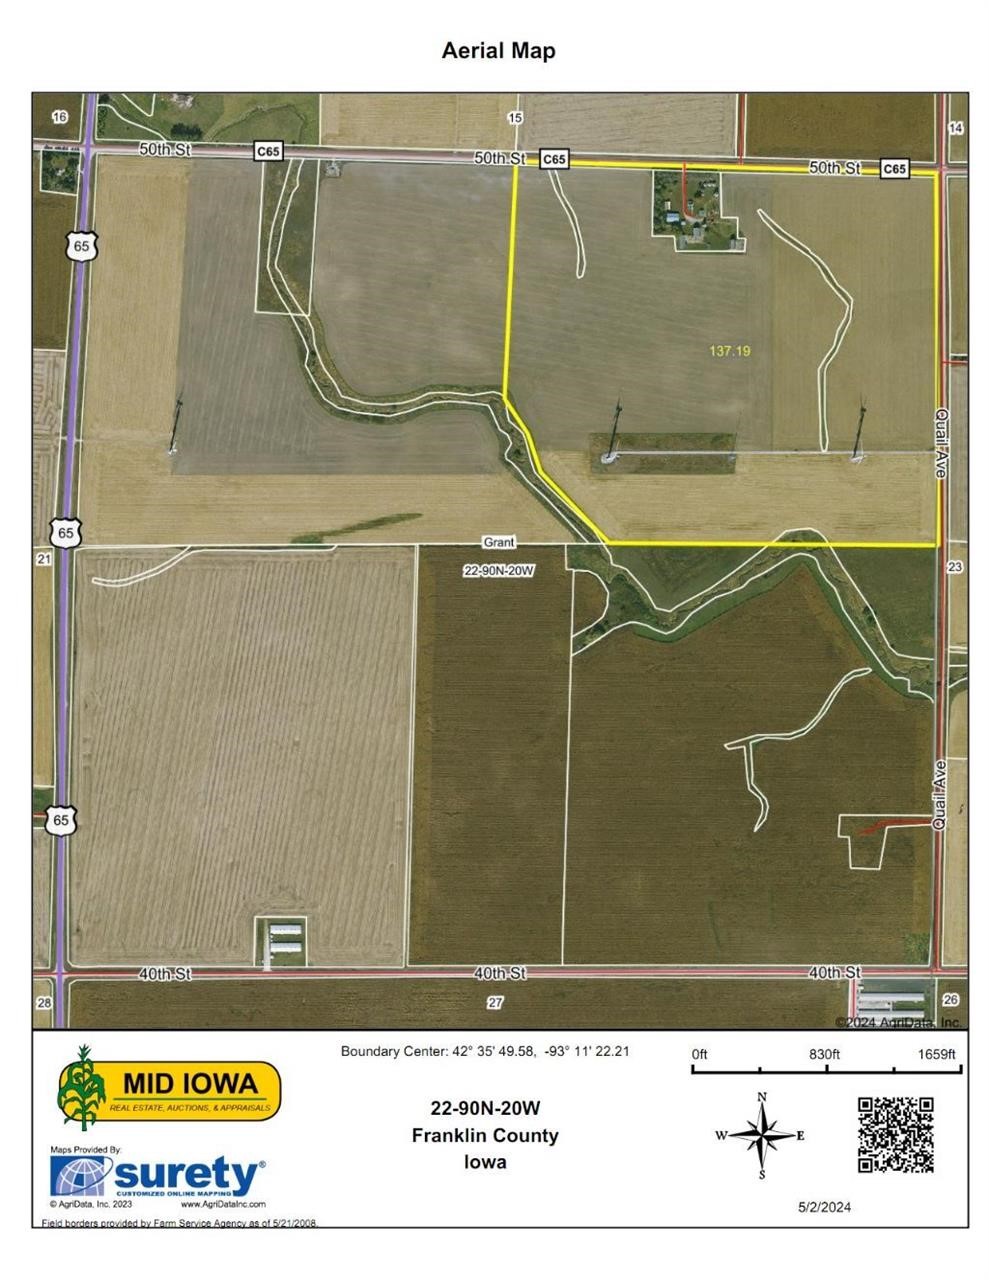 Franklin County Iowa Land Auction, 292 Acres M/L